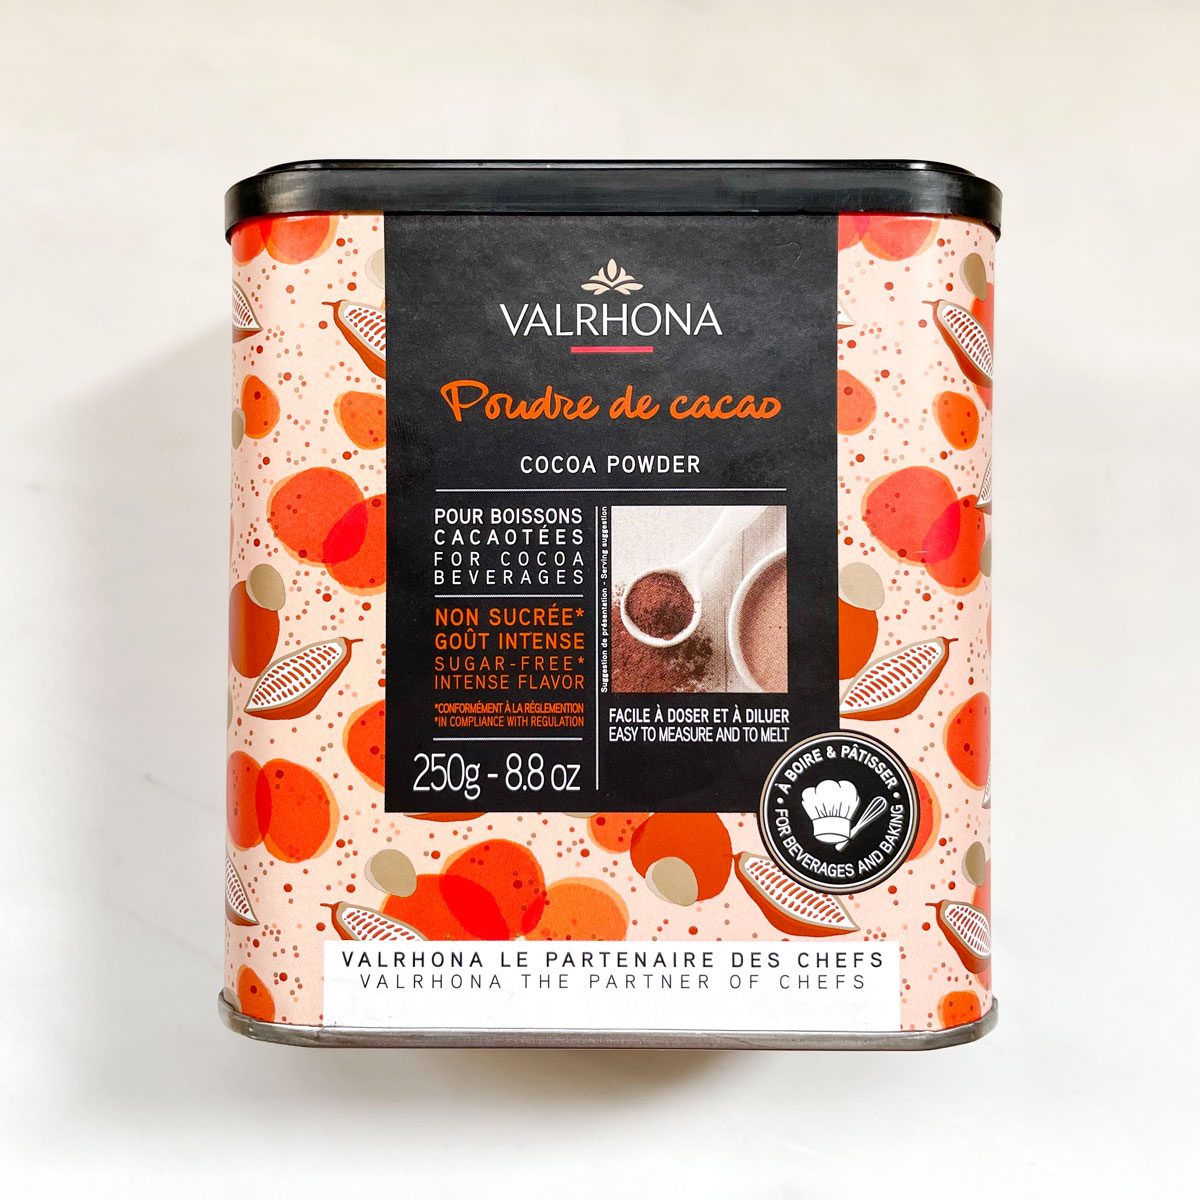 Valrhona cocoa powder container